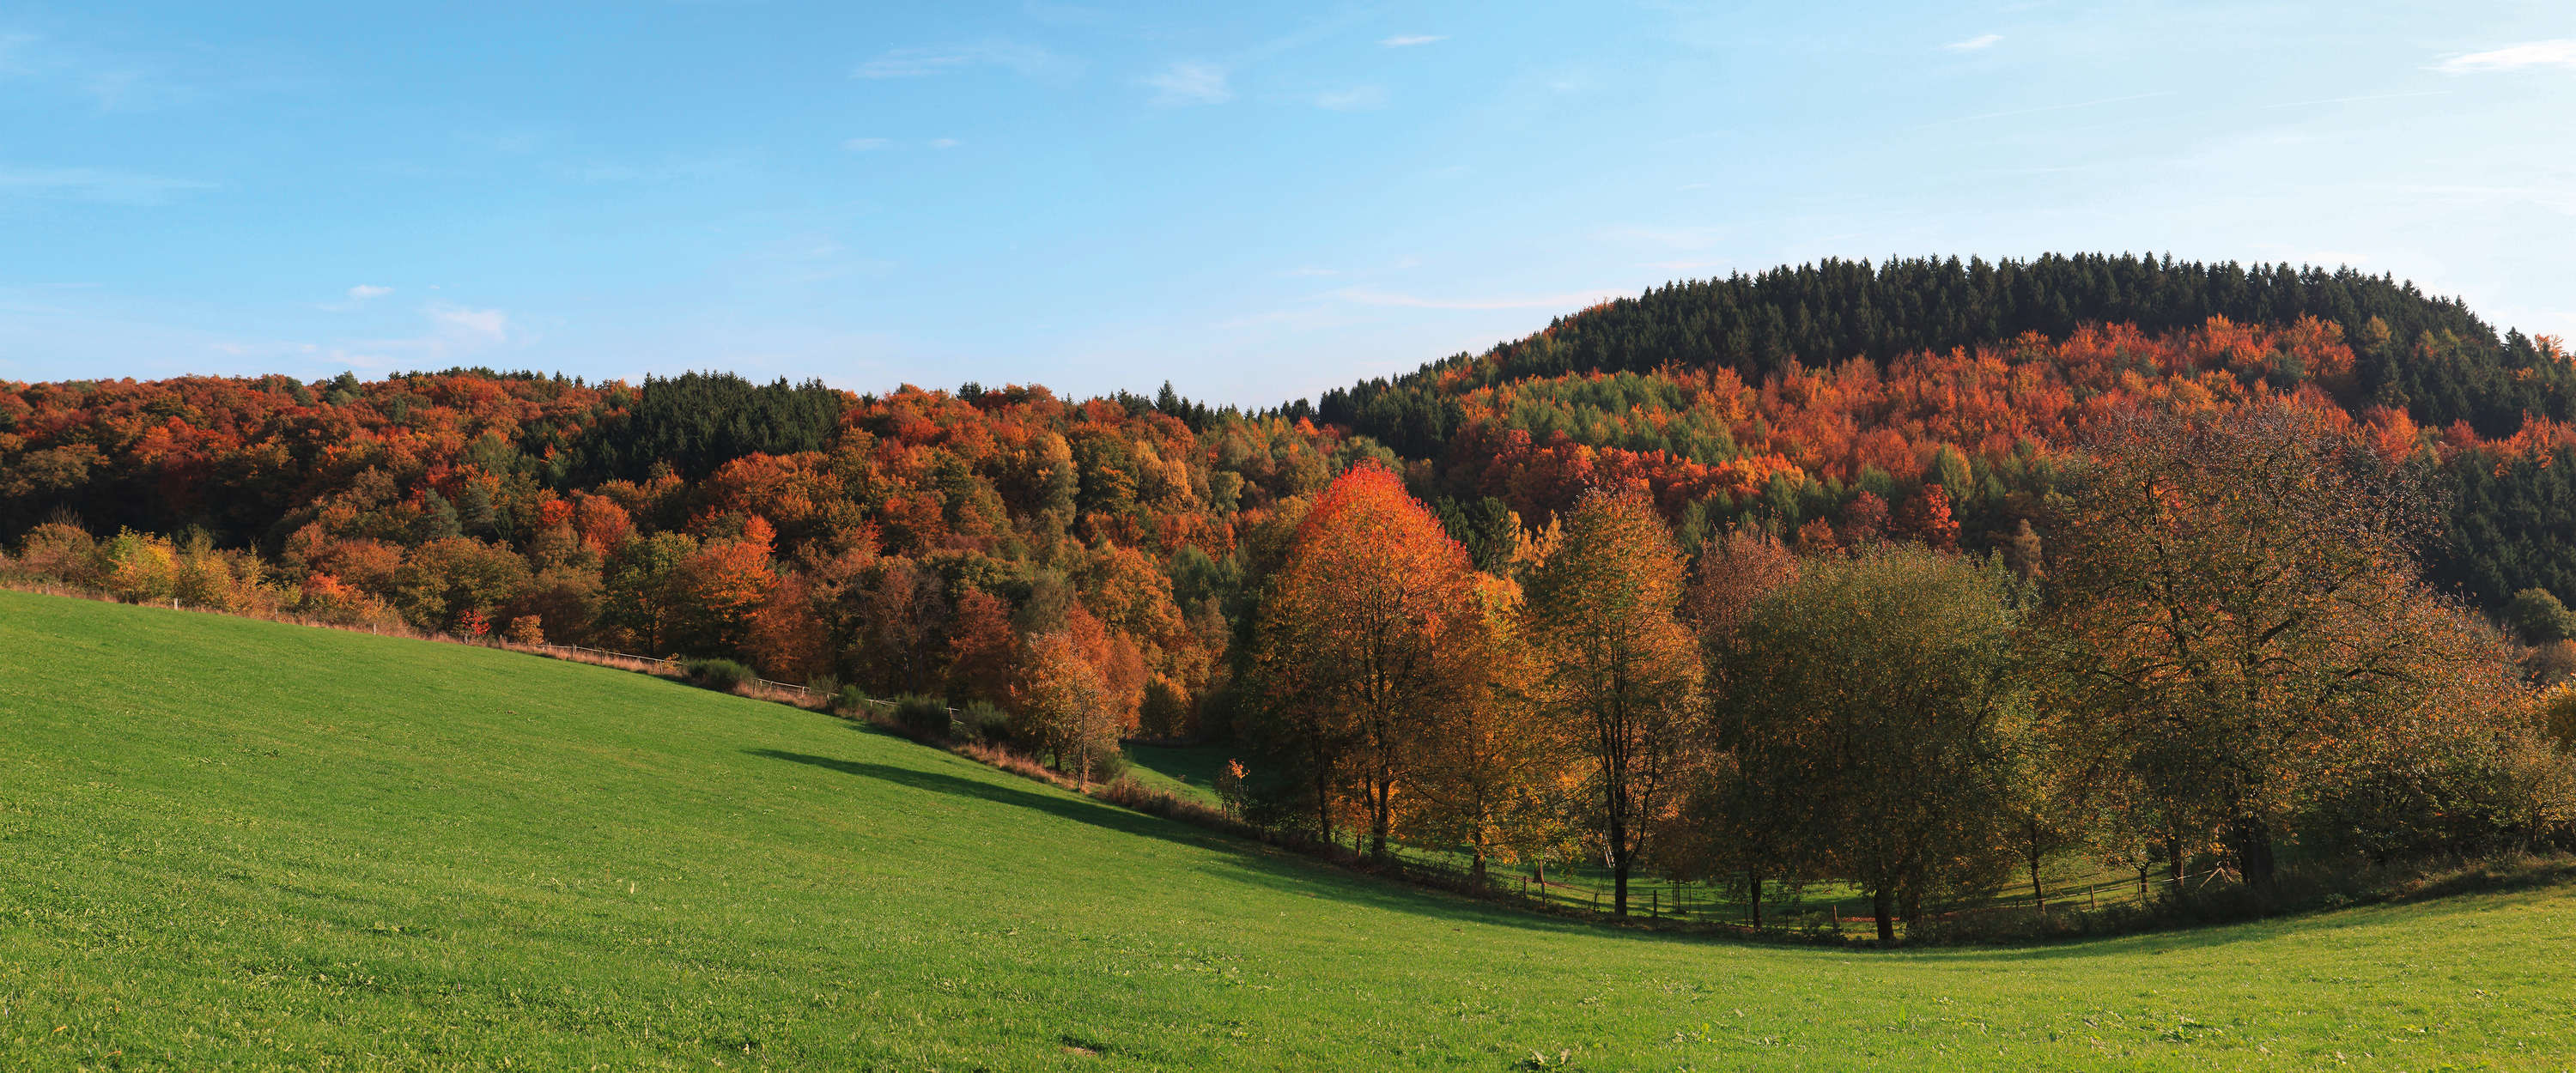             Fotomurali Foresta e prato - Colorata foresta di latifoglie in autunno
        